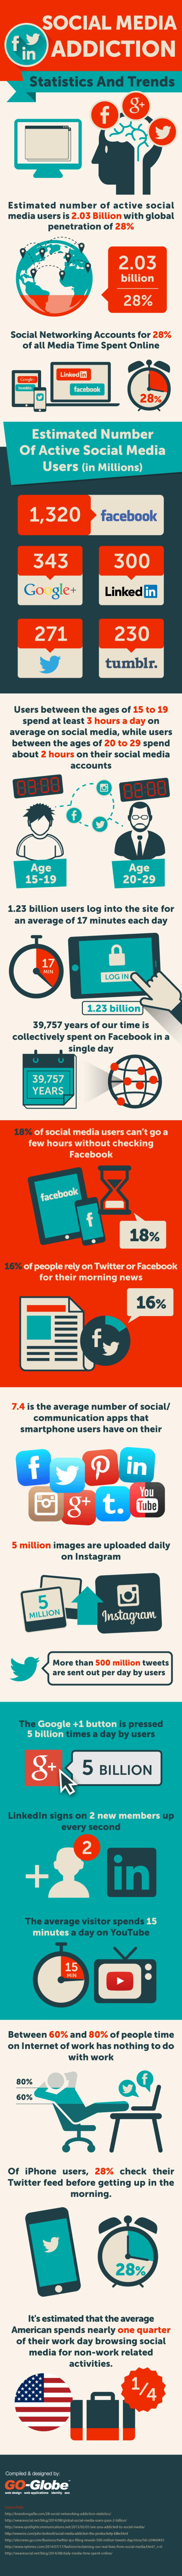 La adicción a las redes sociales, tendencias y estadísticas (infografía)